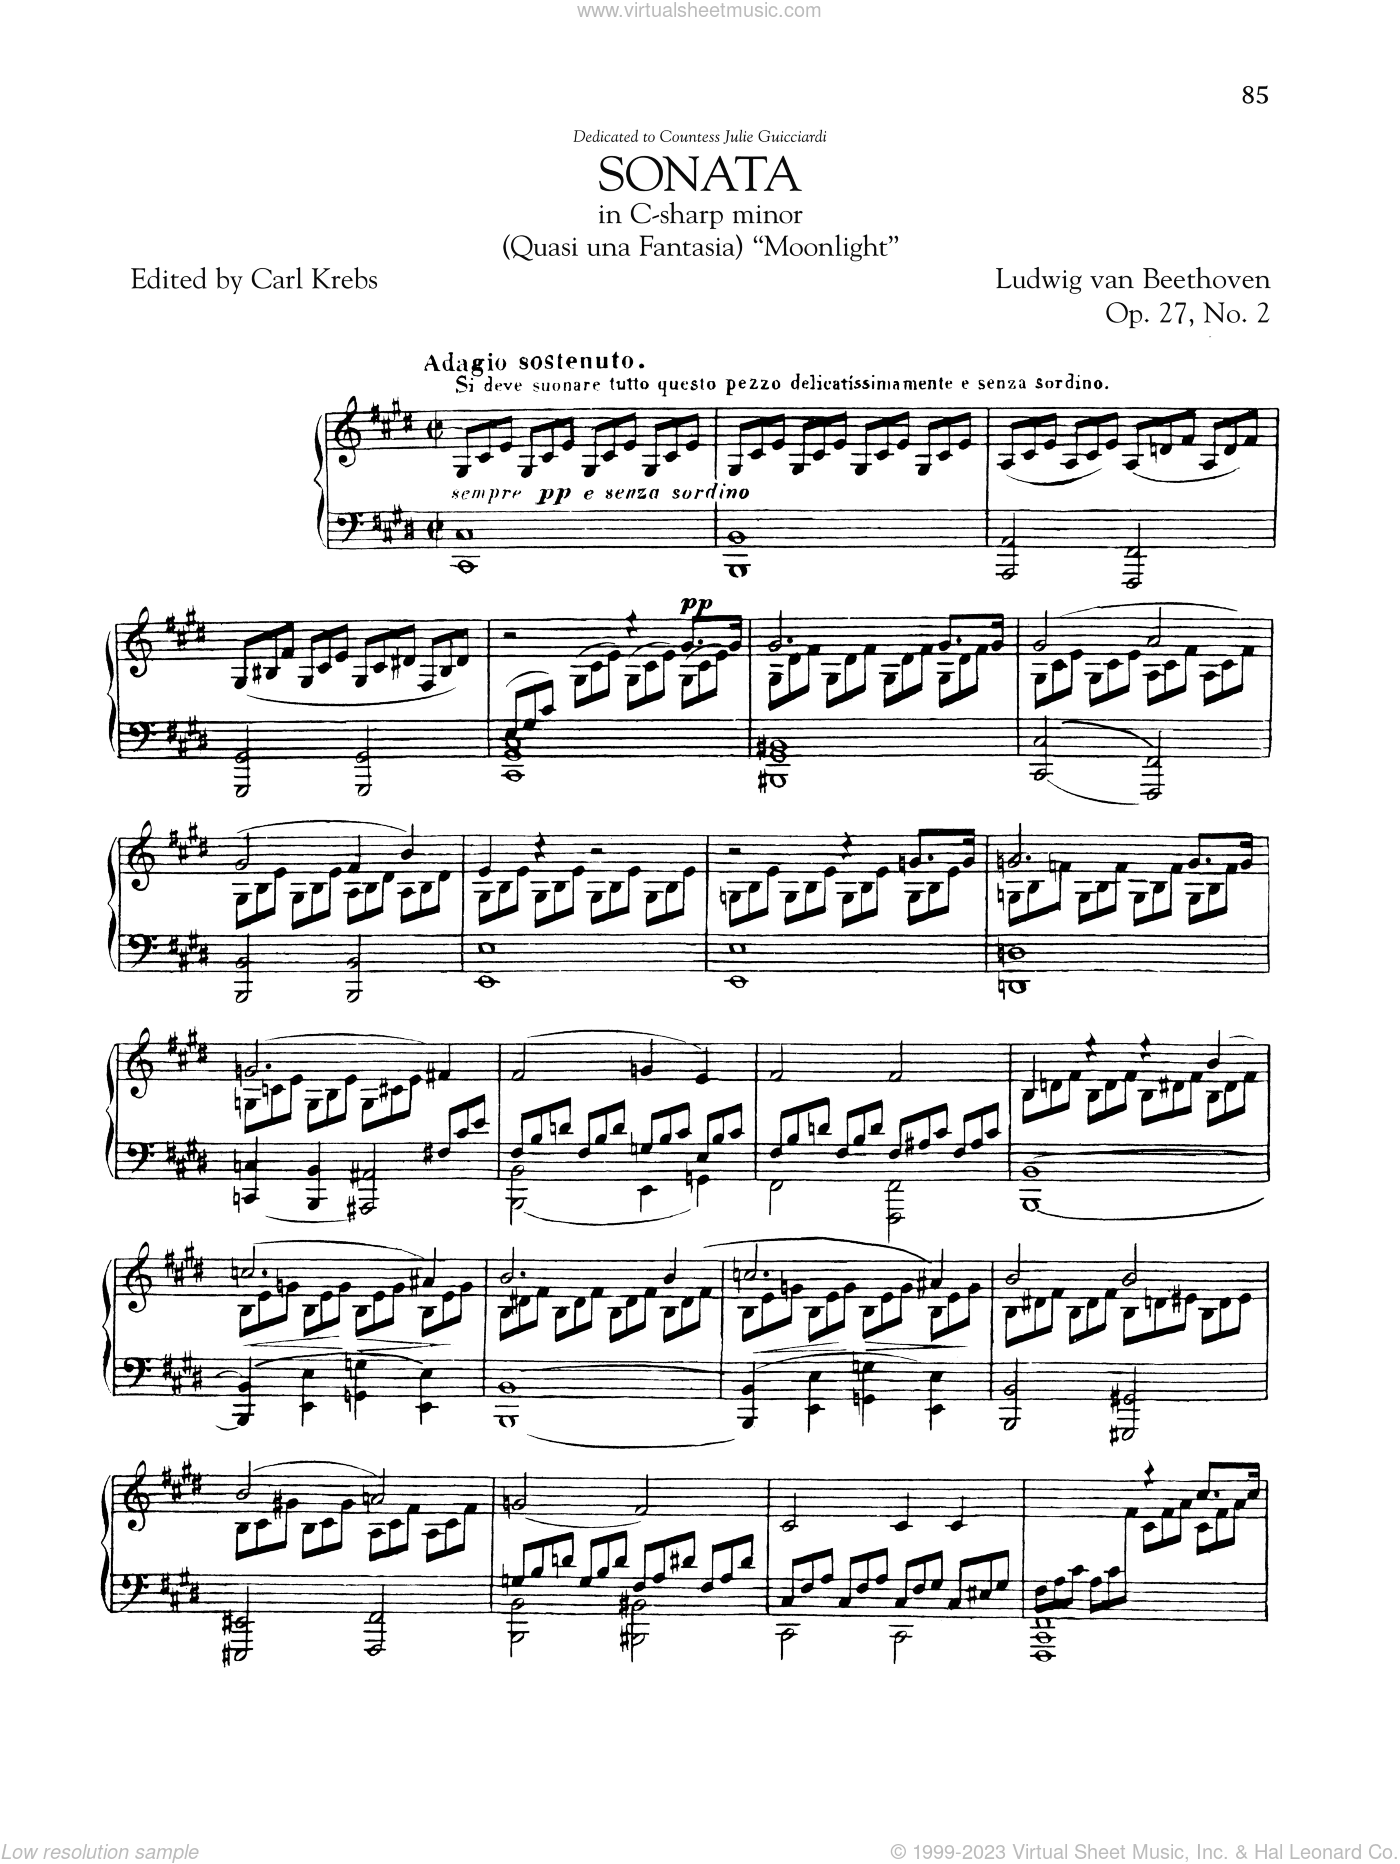 Бетховен сонаты для фортепиано слушать. Moonlight Sonata op27 no2 Бетховен. Соната 14 27 2 Бетховен. Соната для фортепиано № 14. 27 Соната Бетховена 2 часть.